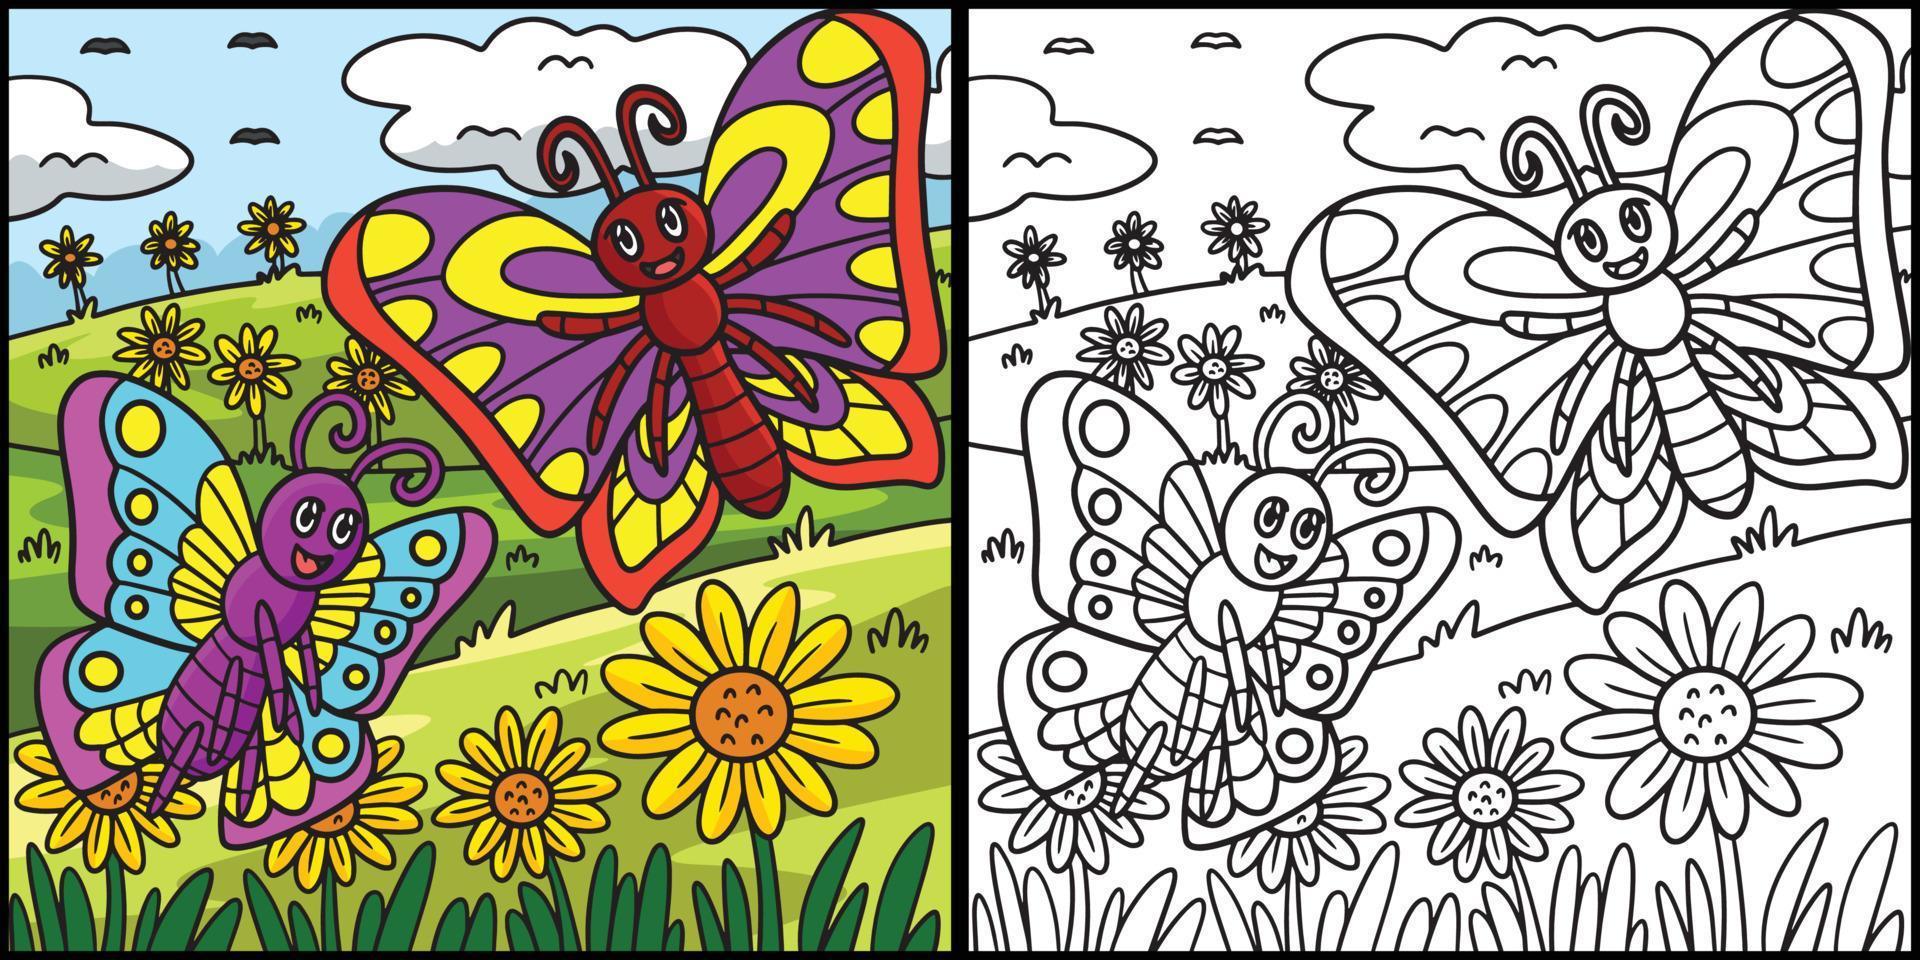 papillon coloriage illustration colorée vecteur